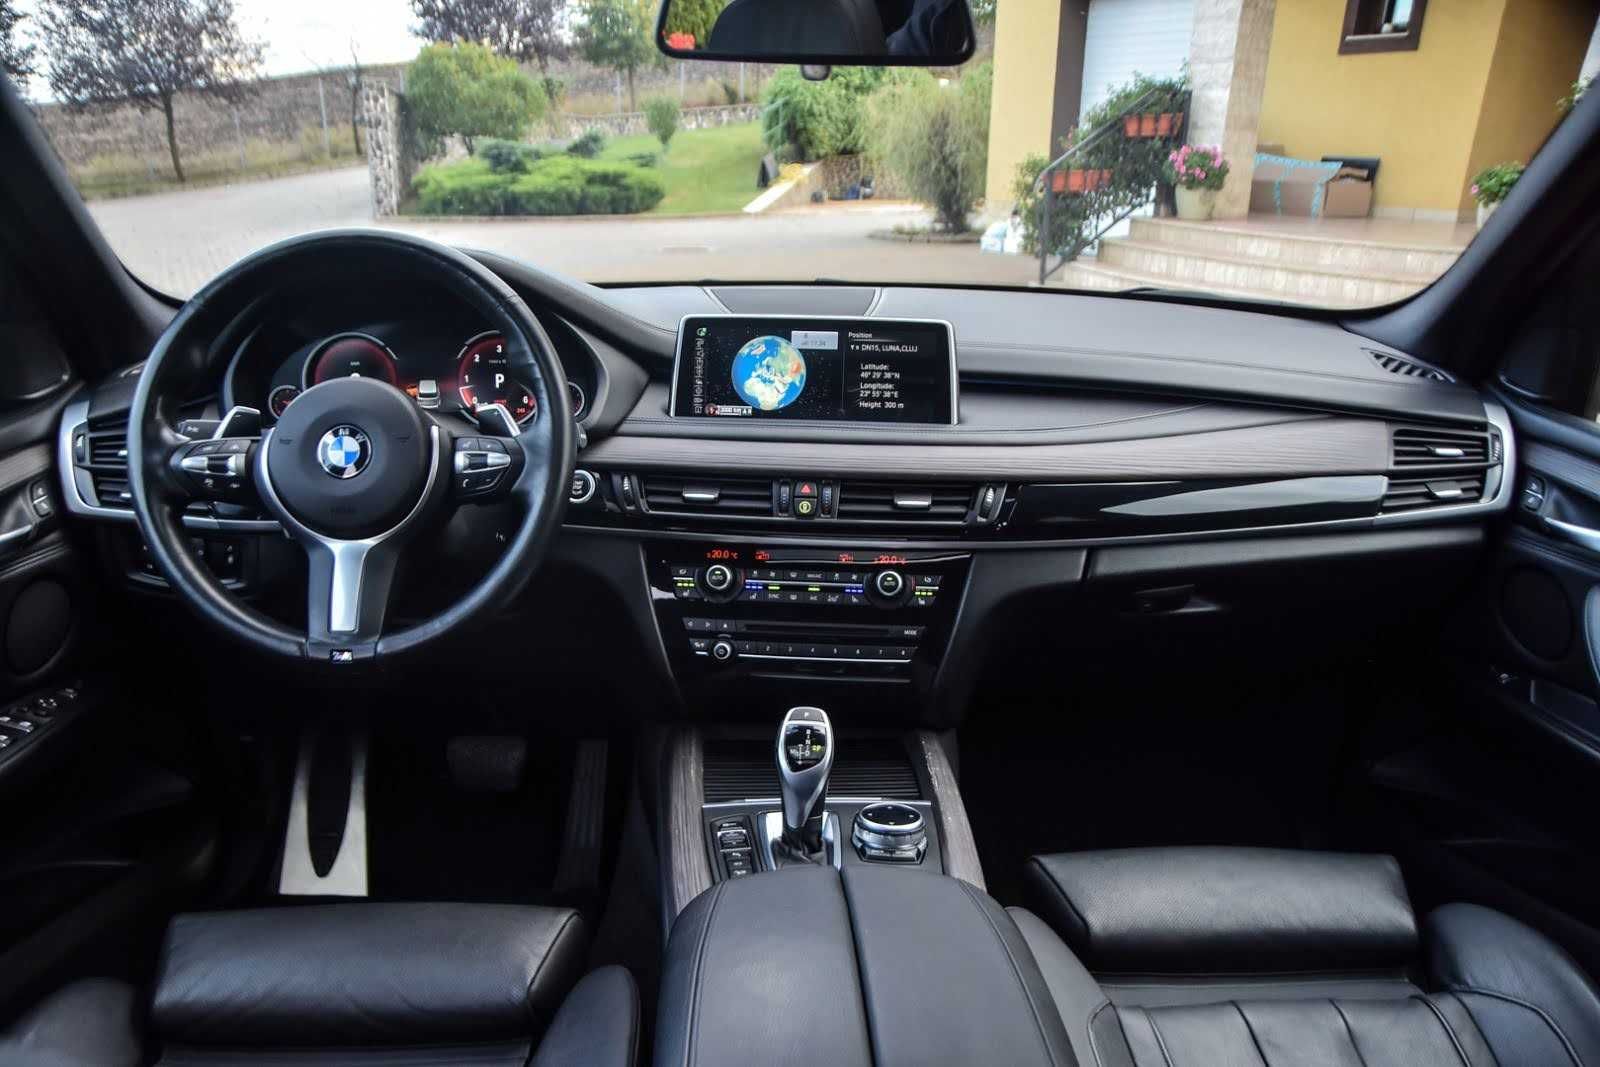 BMW X5 2014 F15 M40d 313 HP